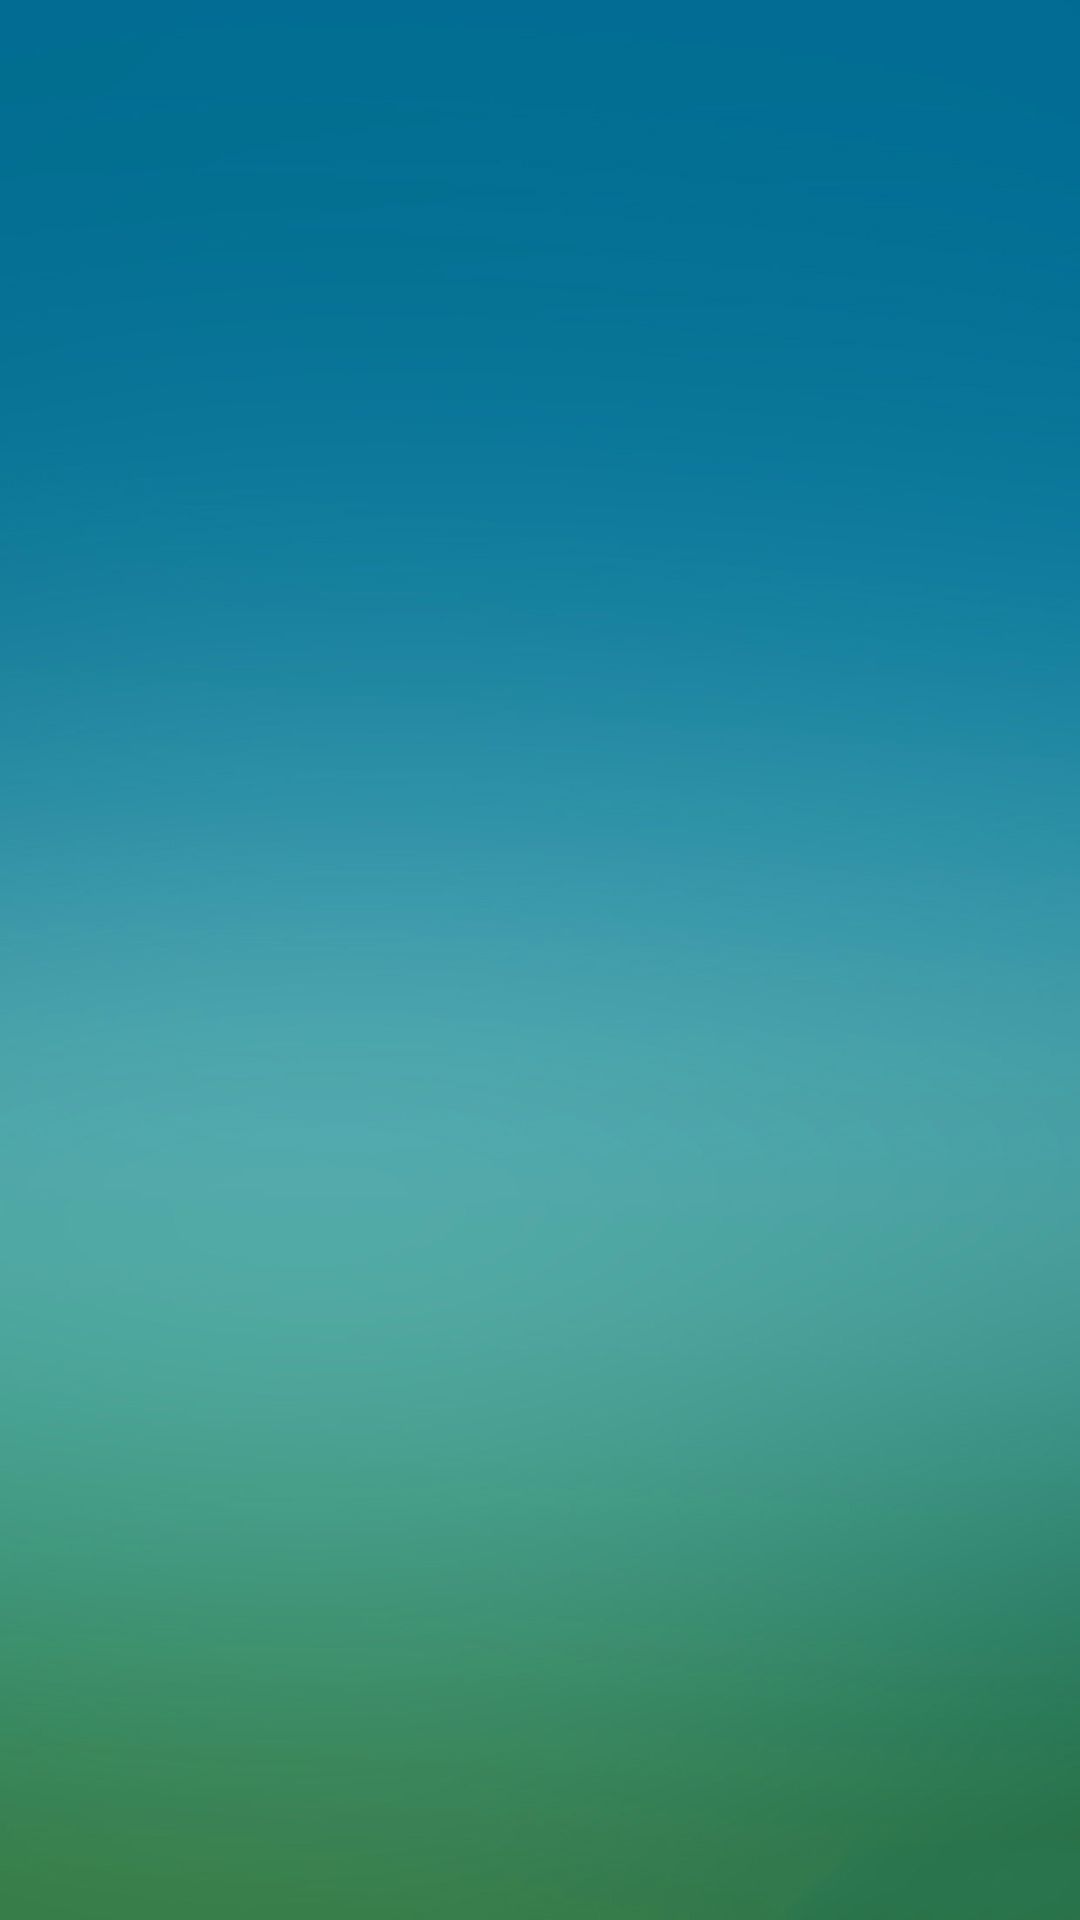 Blue Green Gradation Wallpaper - Blue Green Wallpaper Hd , HD Wallpaper & Backgrounds